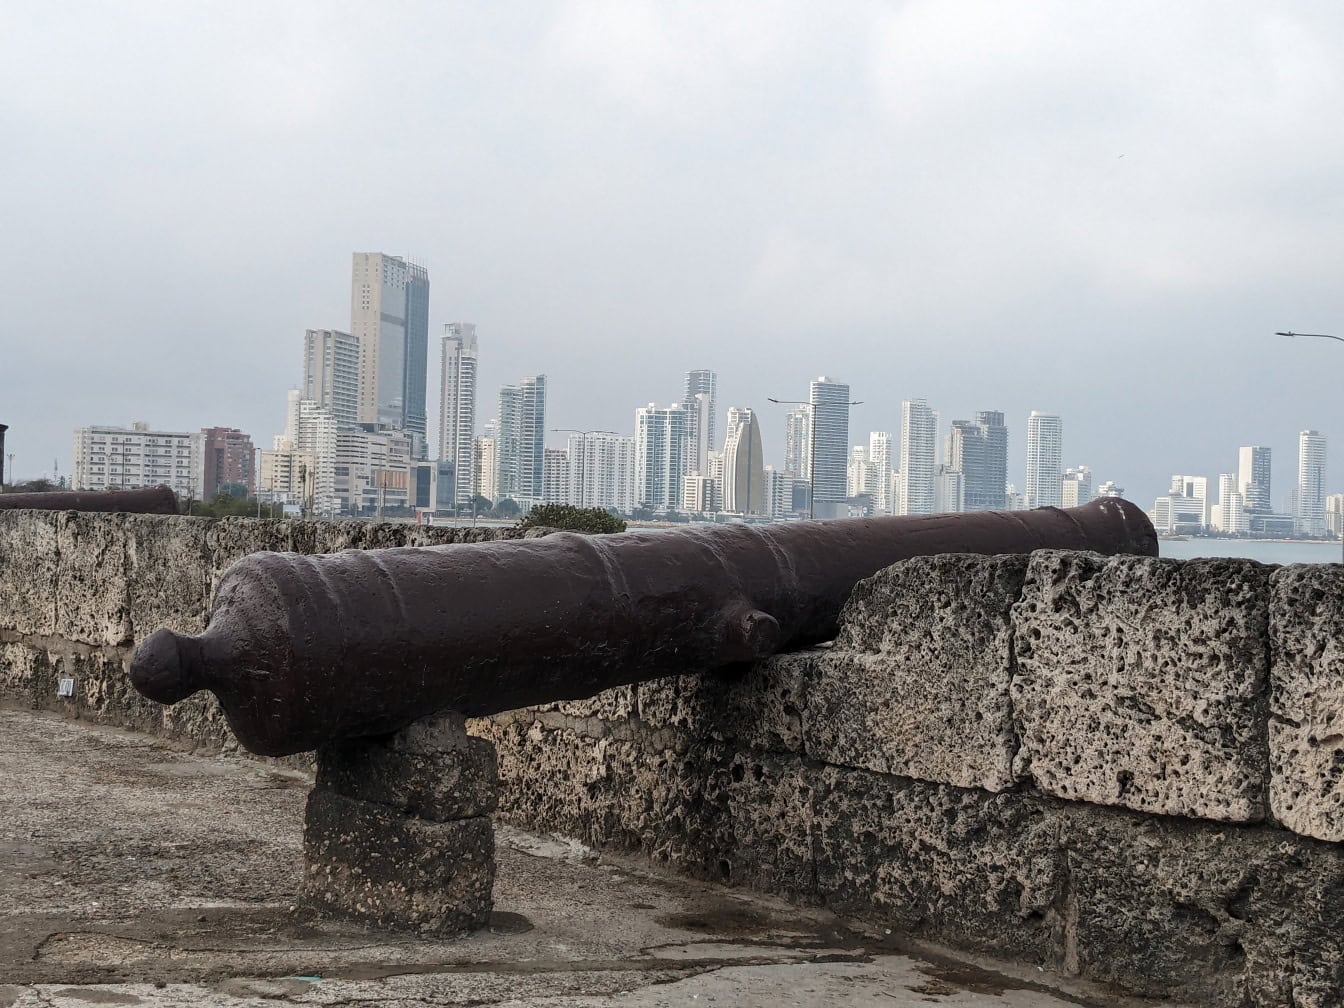 ปืนใหญ่ยุคกลางบนกําแพงหินที่มีเมือง Cartagena ในโคลัมเบียเป็นฉากหลัง